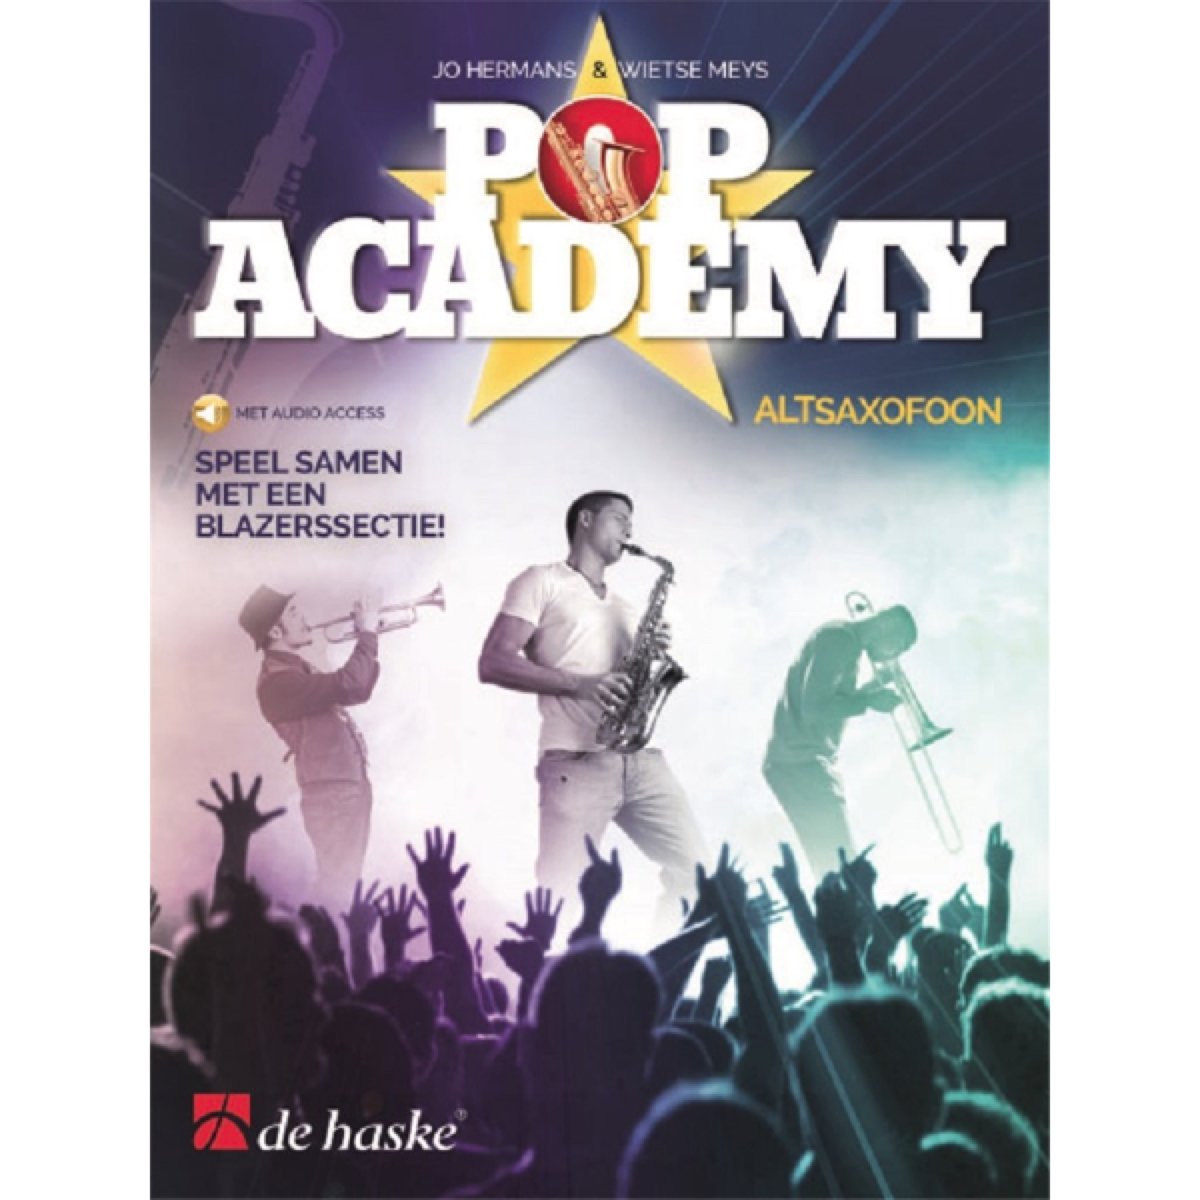 Pop Academy altsax